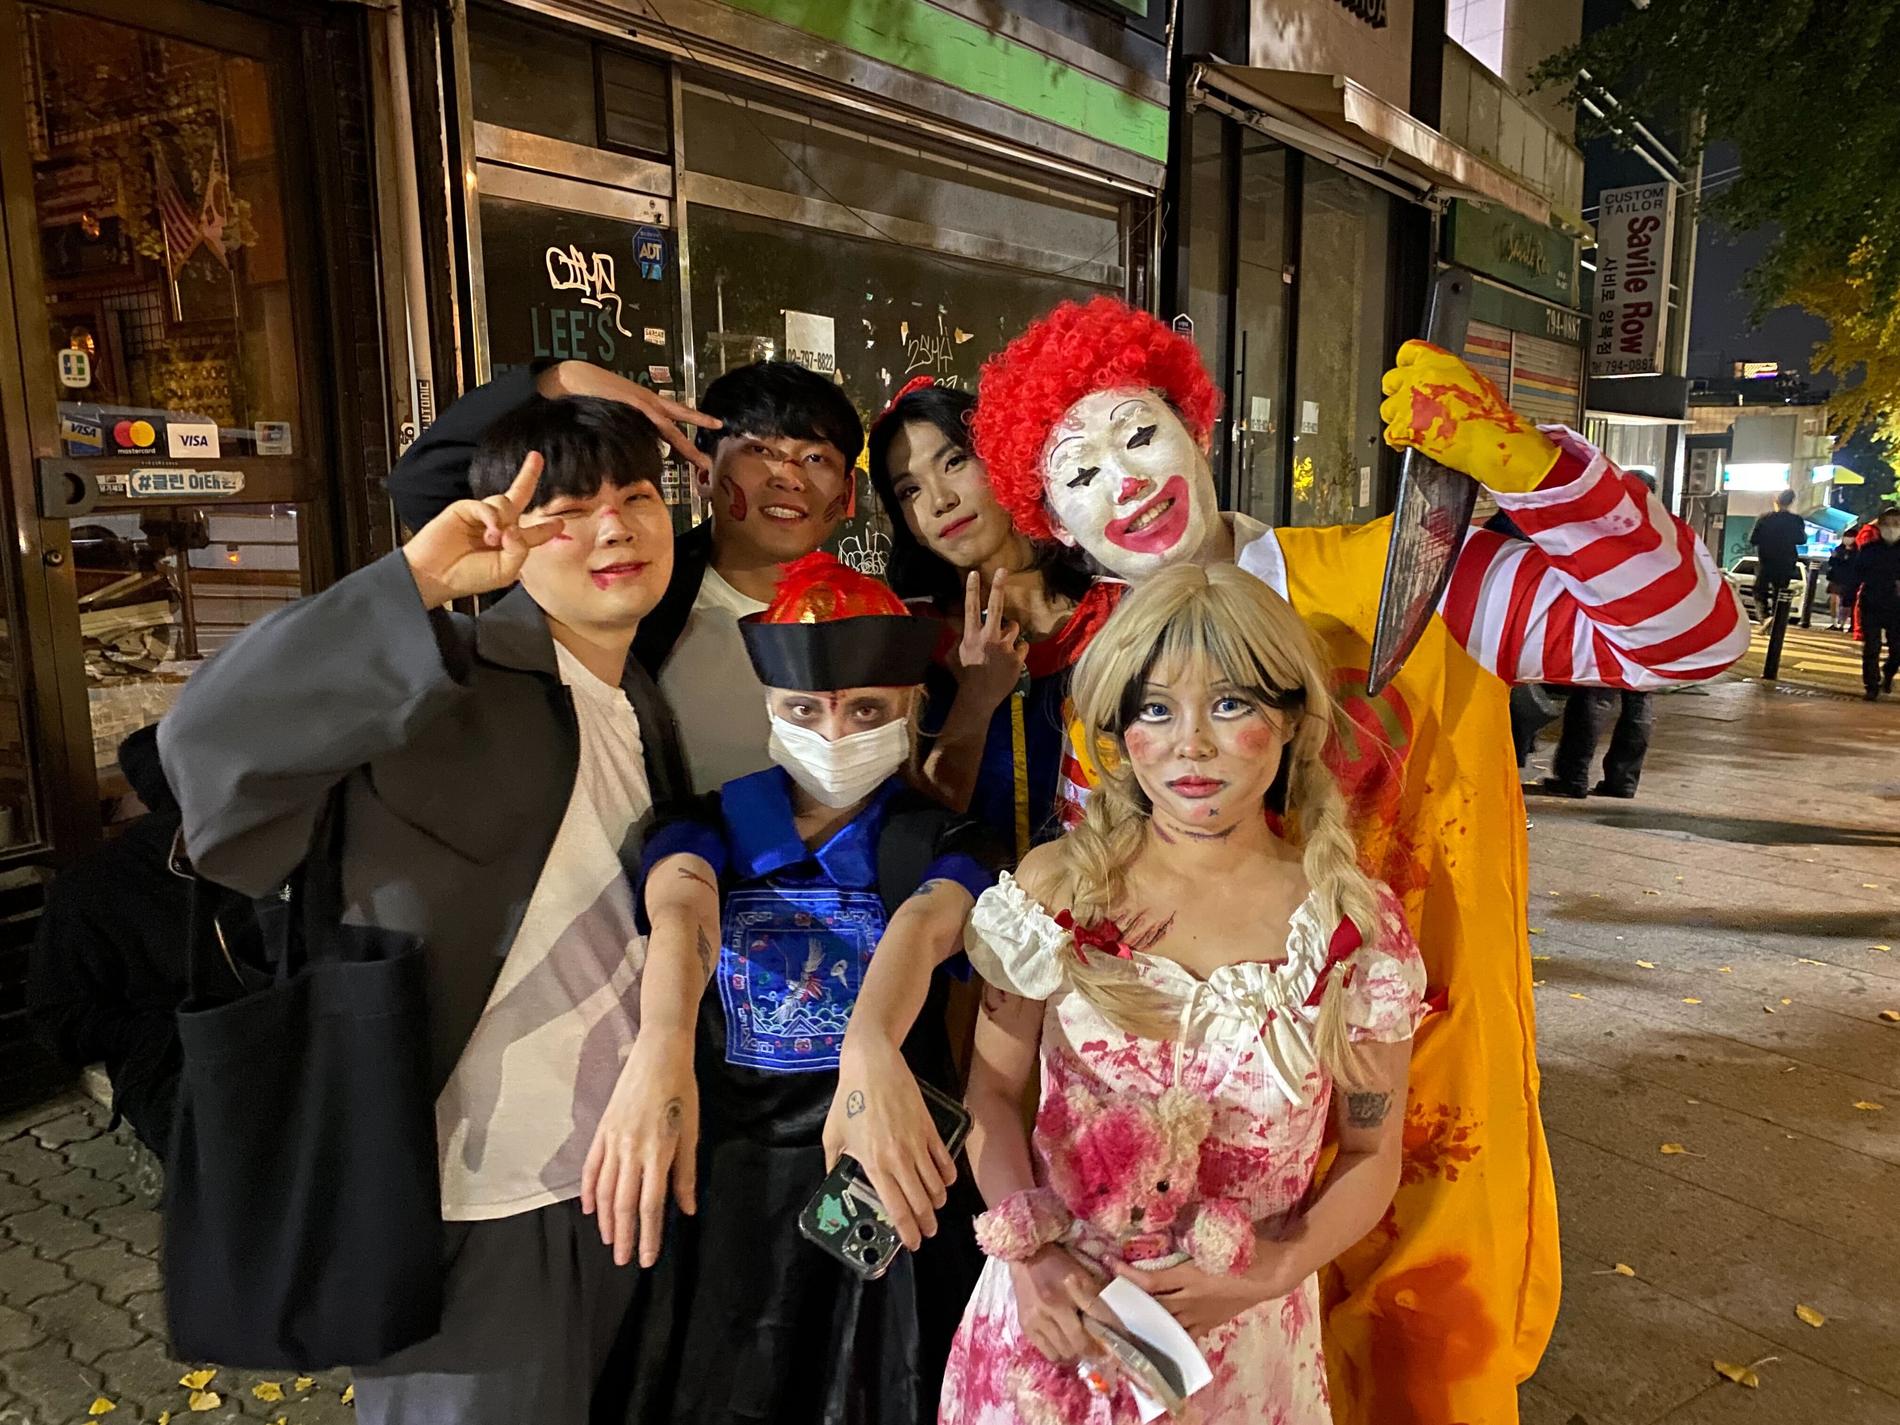 Halloweenfirandet i Seoul är extra stort i år eftersom det är första året efter pandemin så folk kan klä ut sig utan att behöva ha ansiktsmask, berättar lokalinvånare för Aftonbladets reporter på plats.